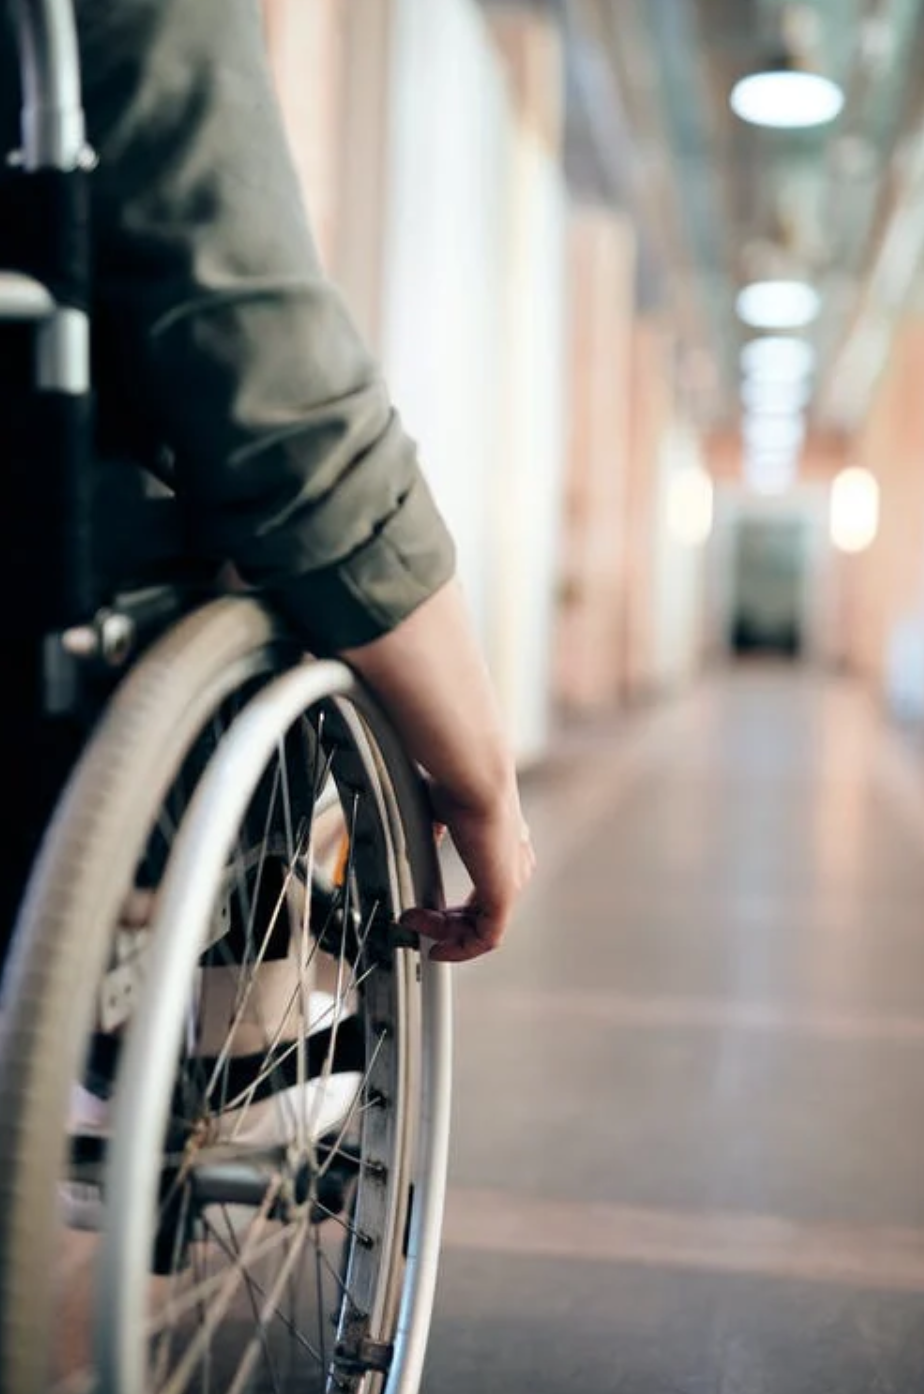 Person in wheelchair; image by Marcus Aurelius, via Pexels.com.